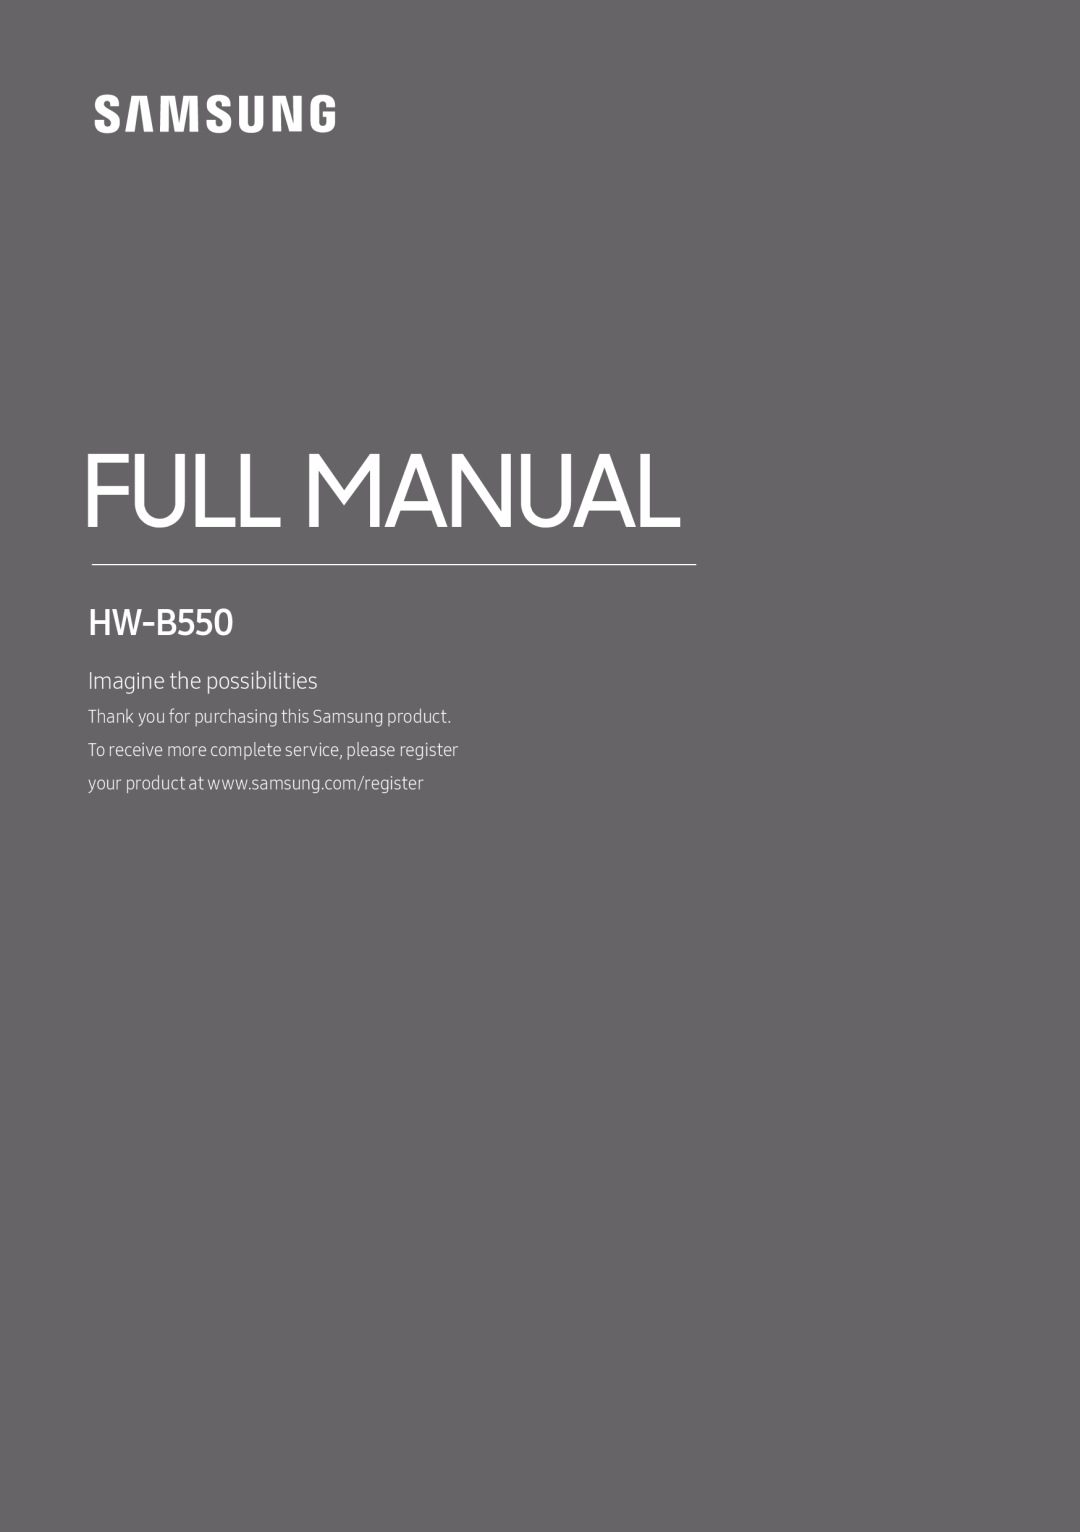 HW-B550 Standard HW-B550